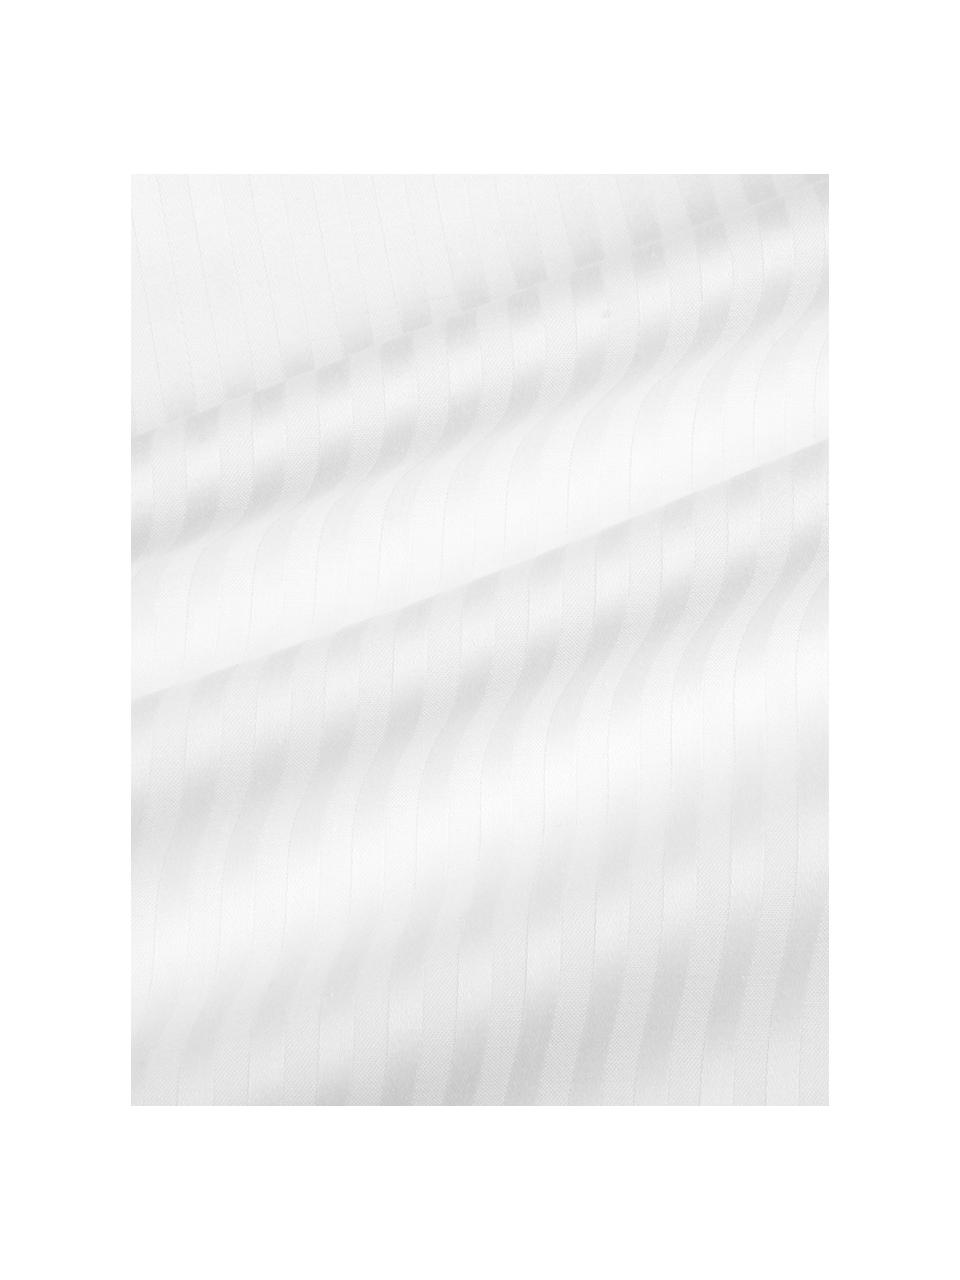 Parure copripiumino in raso di cotone a righe Stella, Tessuto: raso Densità del filo 250, Bianco, 255 x 200 cm + 2 federe 50 x 80 cm